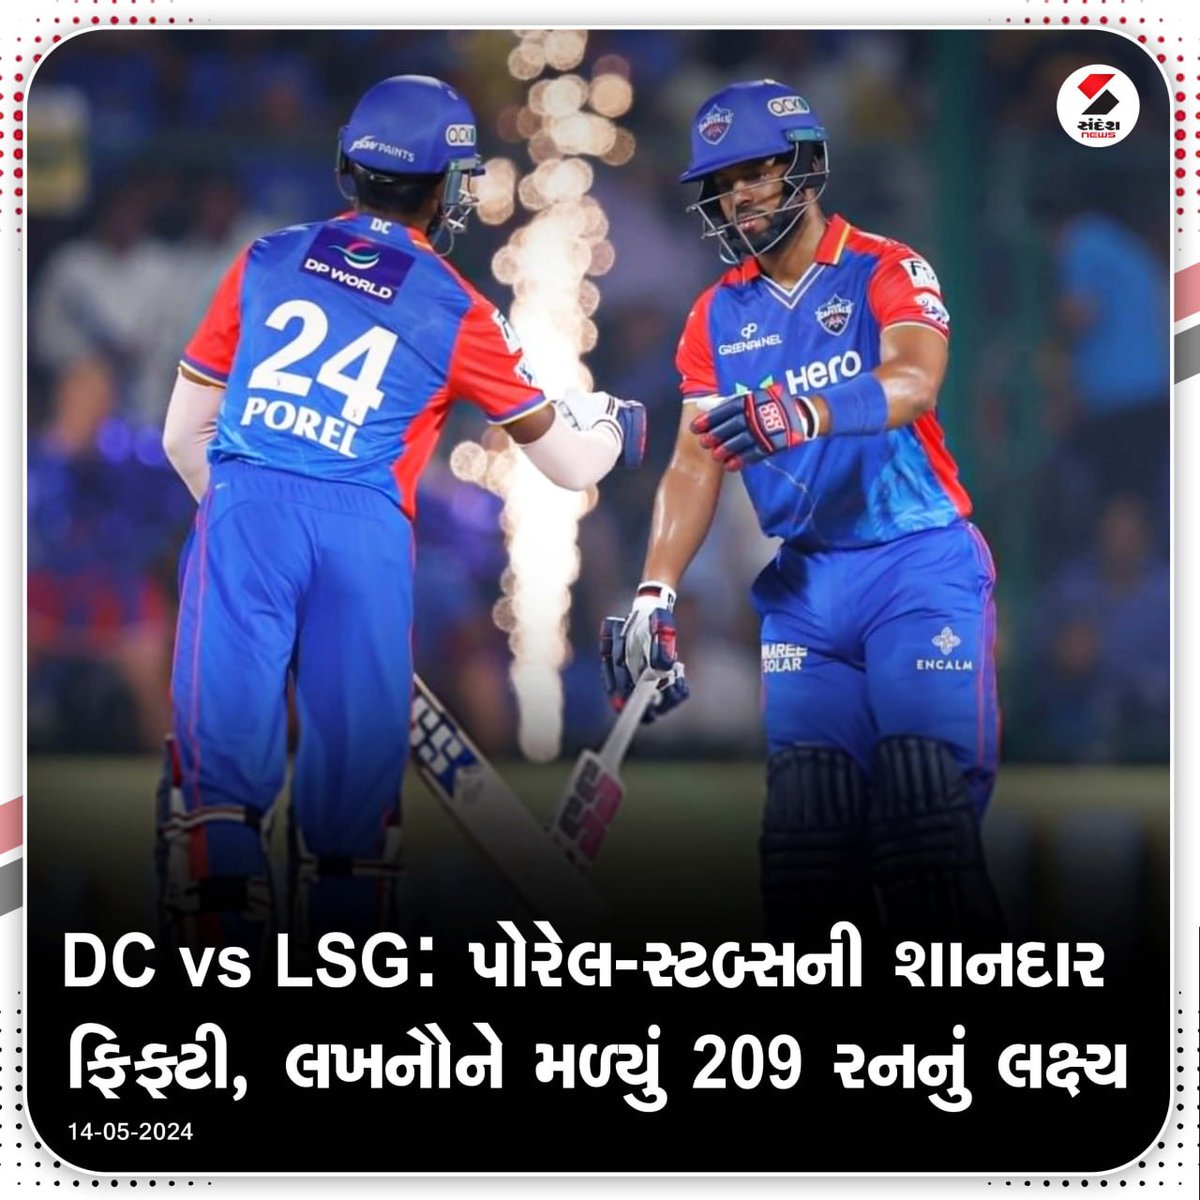 DC vs LSG: પોરેલ-સ્ટબ્સની શાનદાર ફિફ્ટી, લખનૌને મળ્યું 209 રનનું લક્ષ્ય.... #IPL2024 #DCvsLSG #IPL #Cricket #Sports #SandeshNews